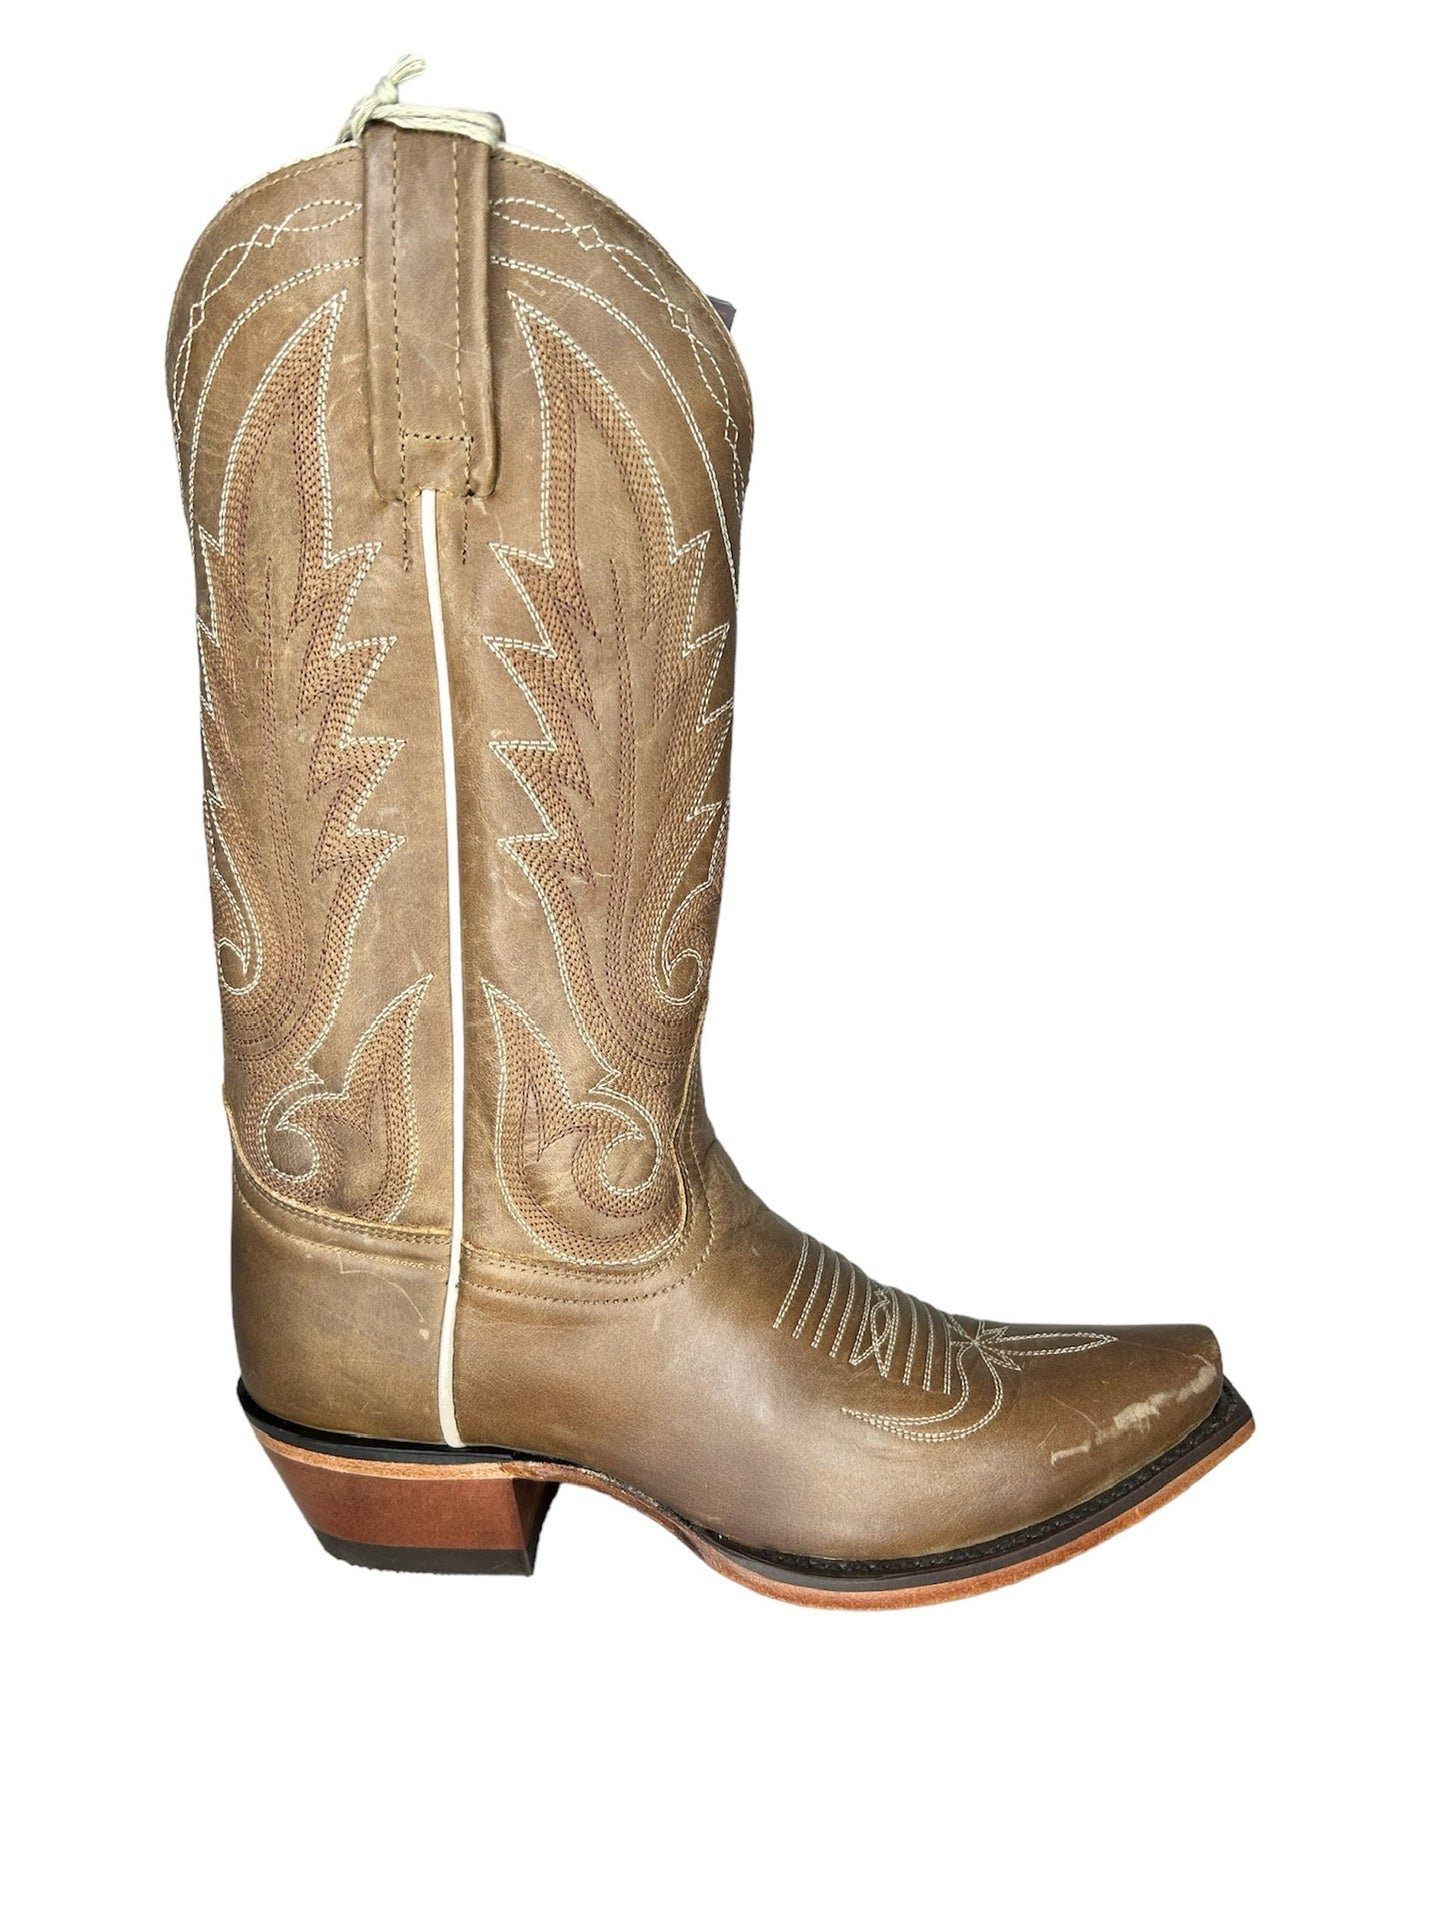 Caborca boots texano Hishani tesuto busty